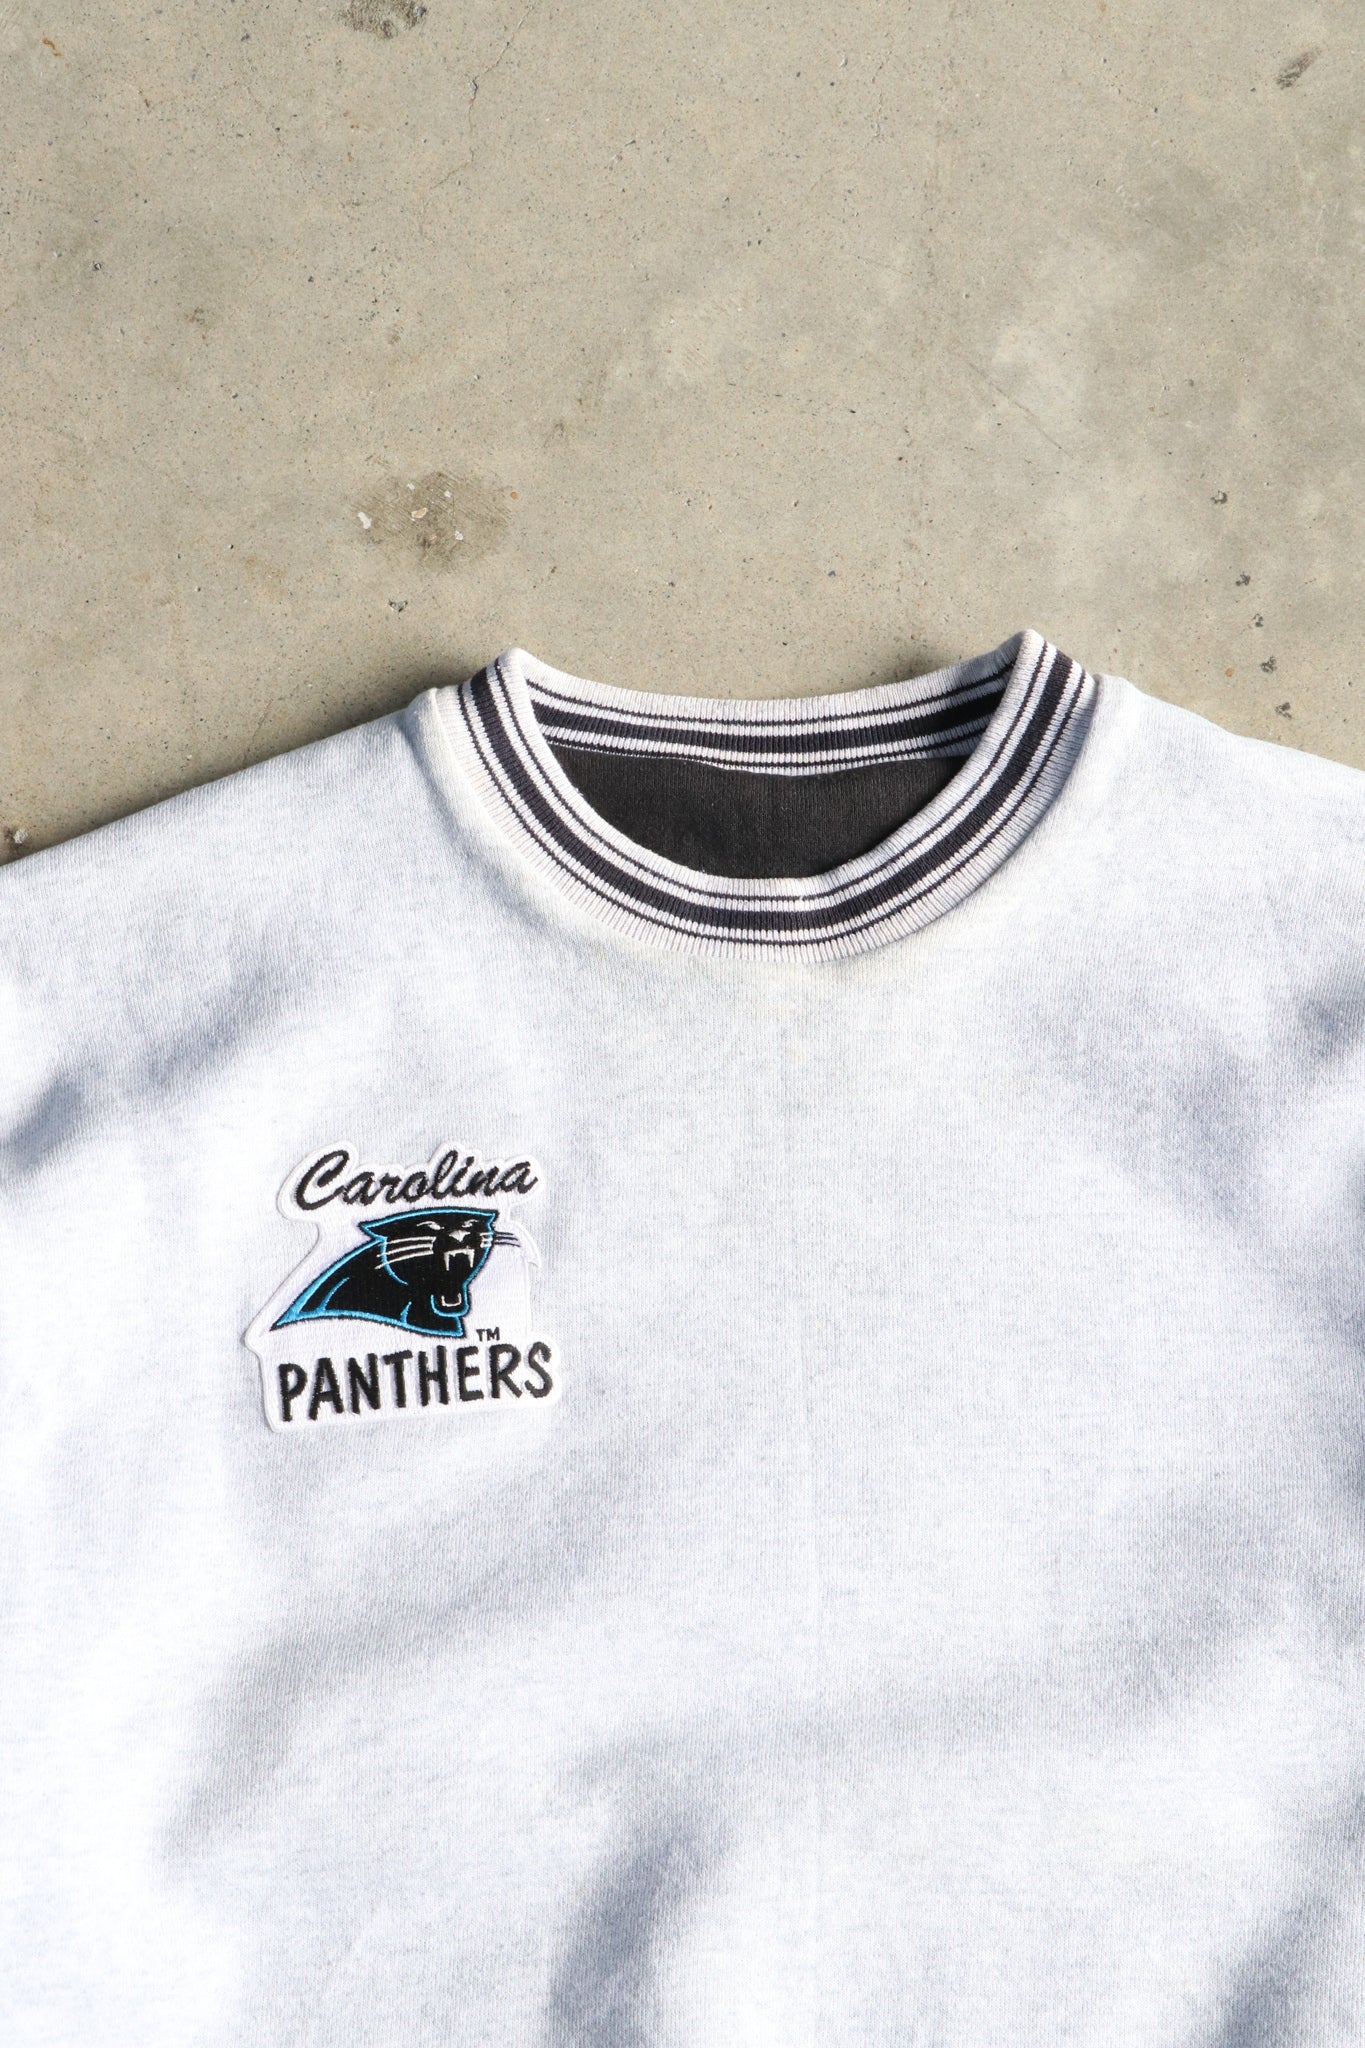 Vintage NFL Carolina Panthers Reversible Sweater Large